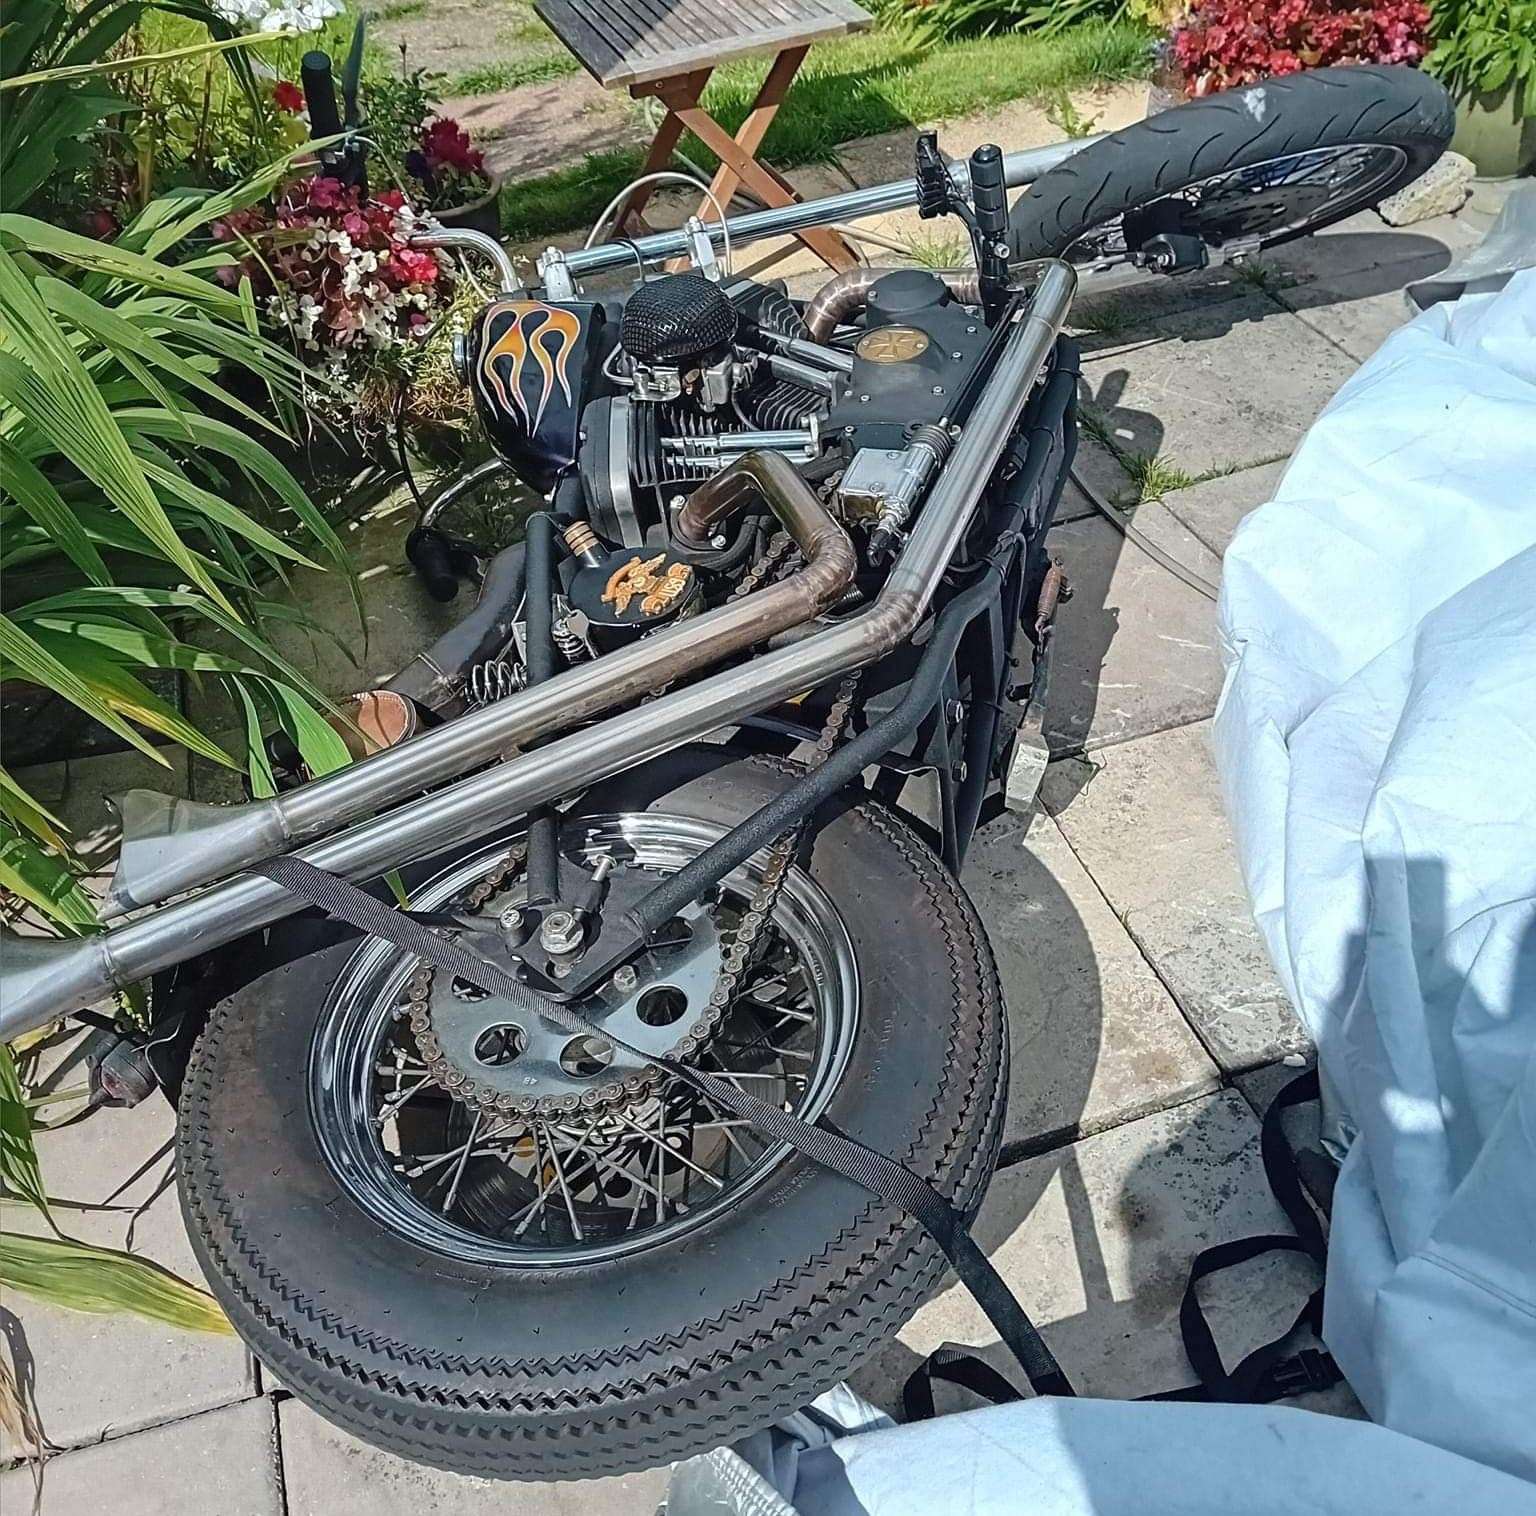 The bike needs £600 worth of repairs